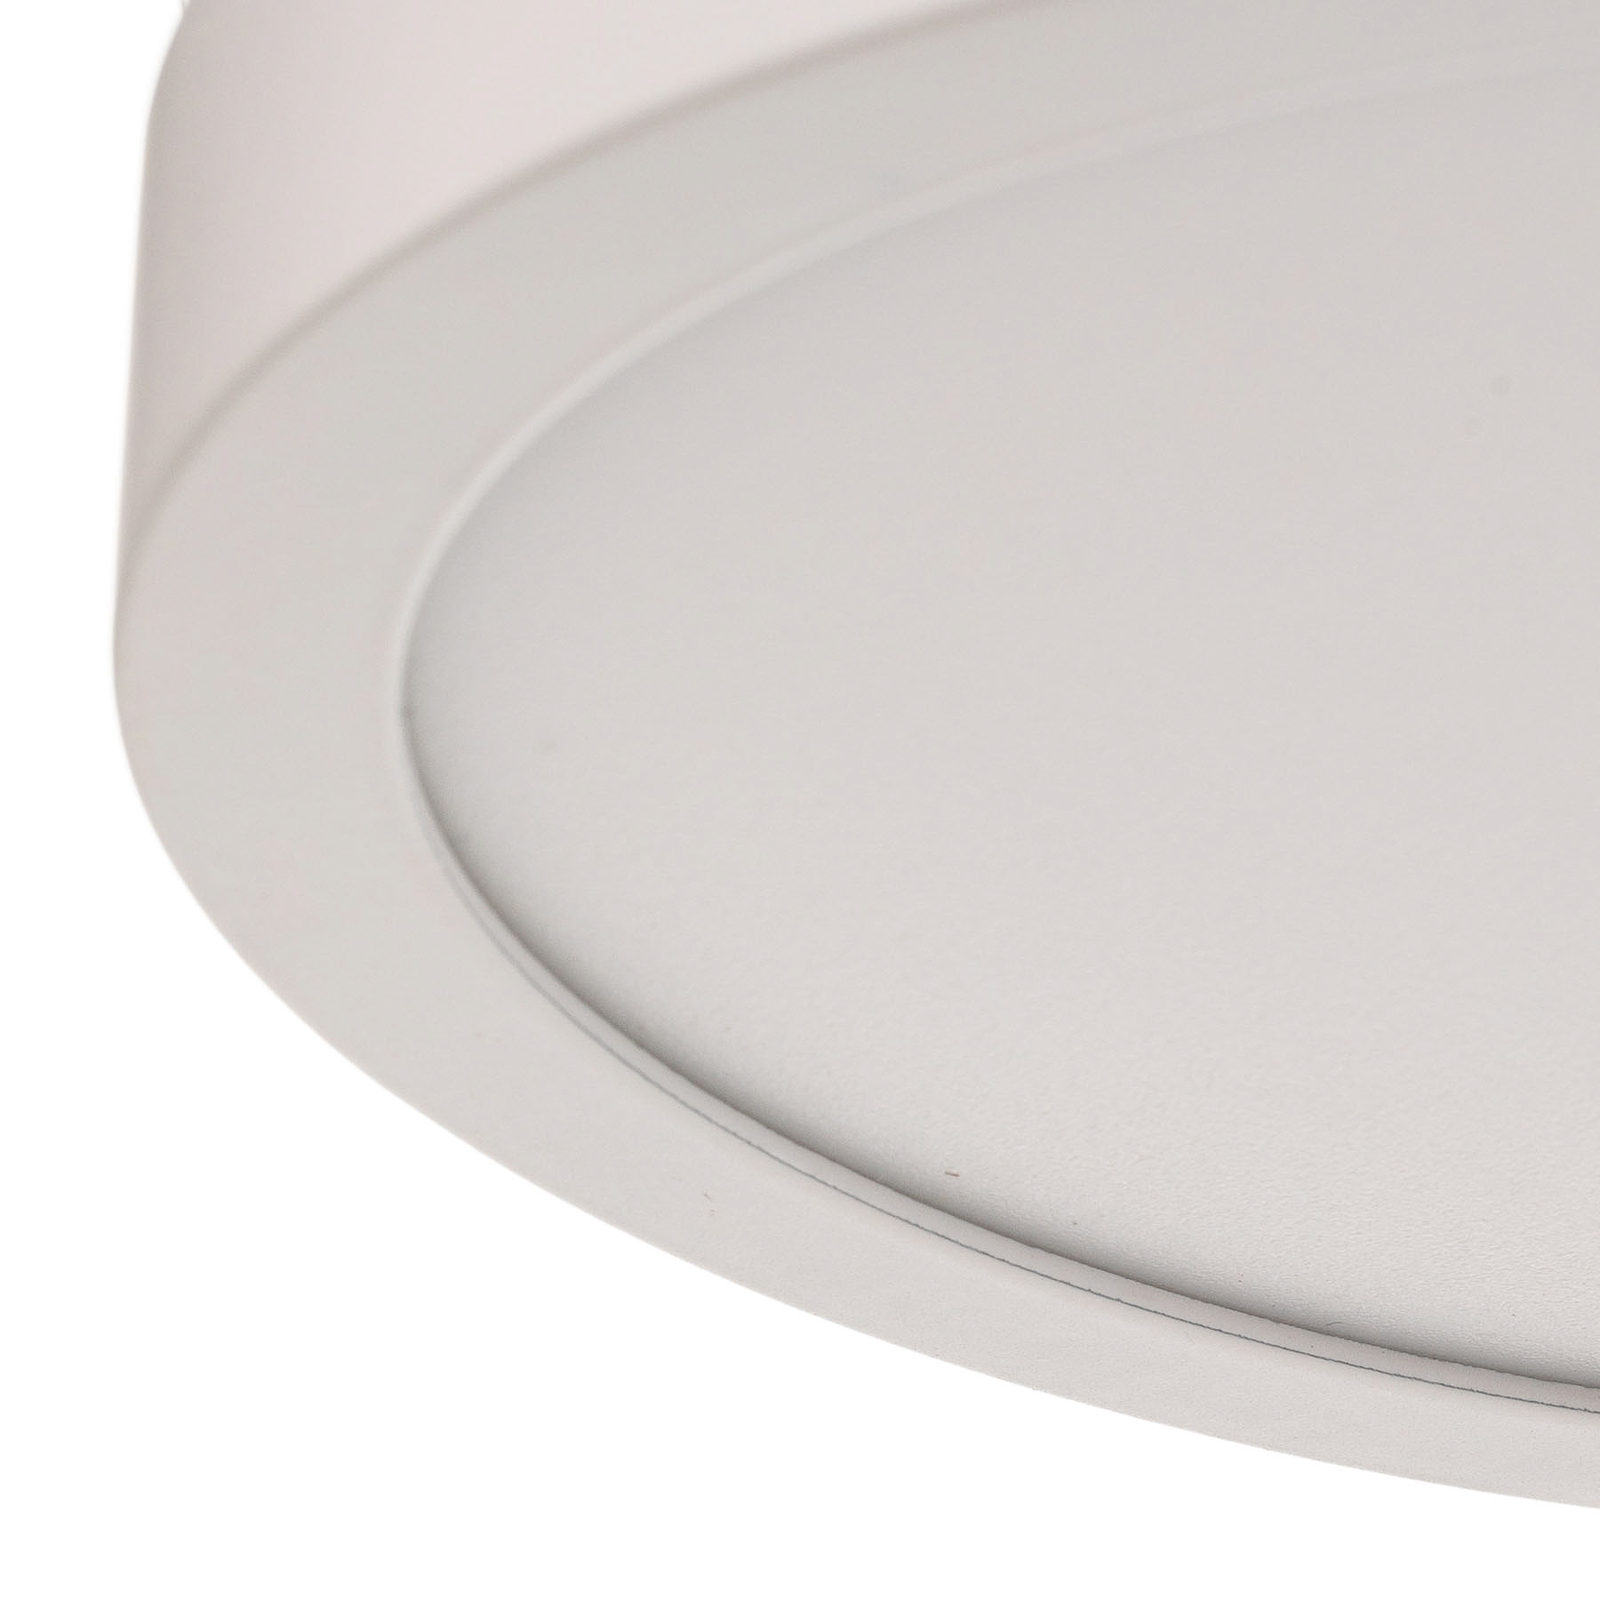 LED stropna svjetiljka Vika, okrugla, bijela, Ø 18cm